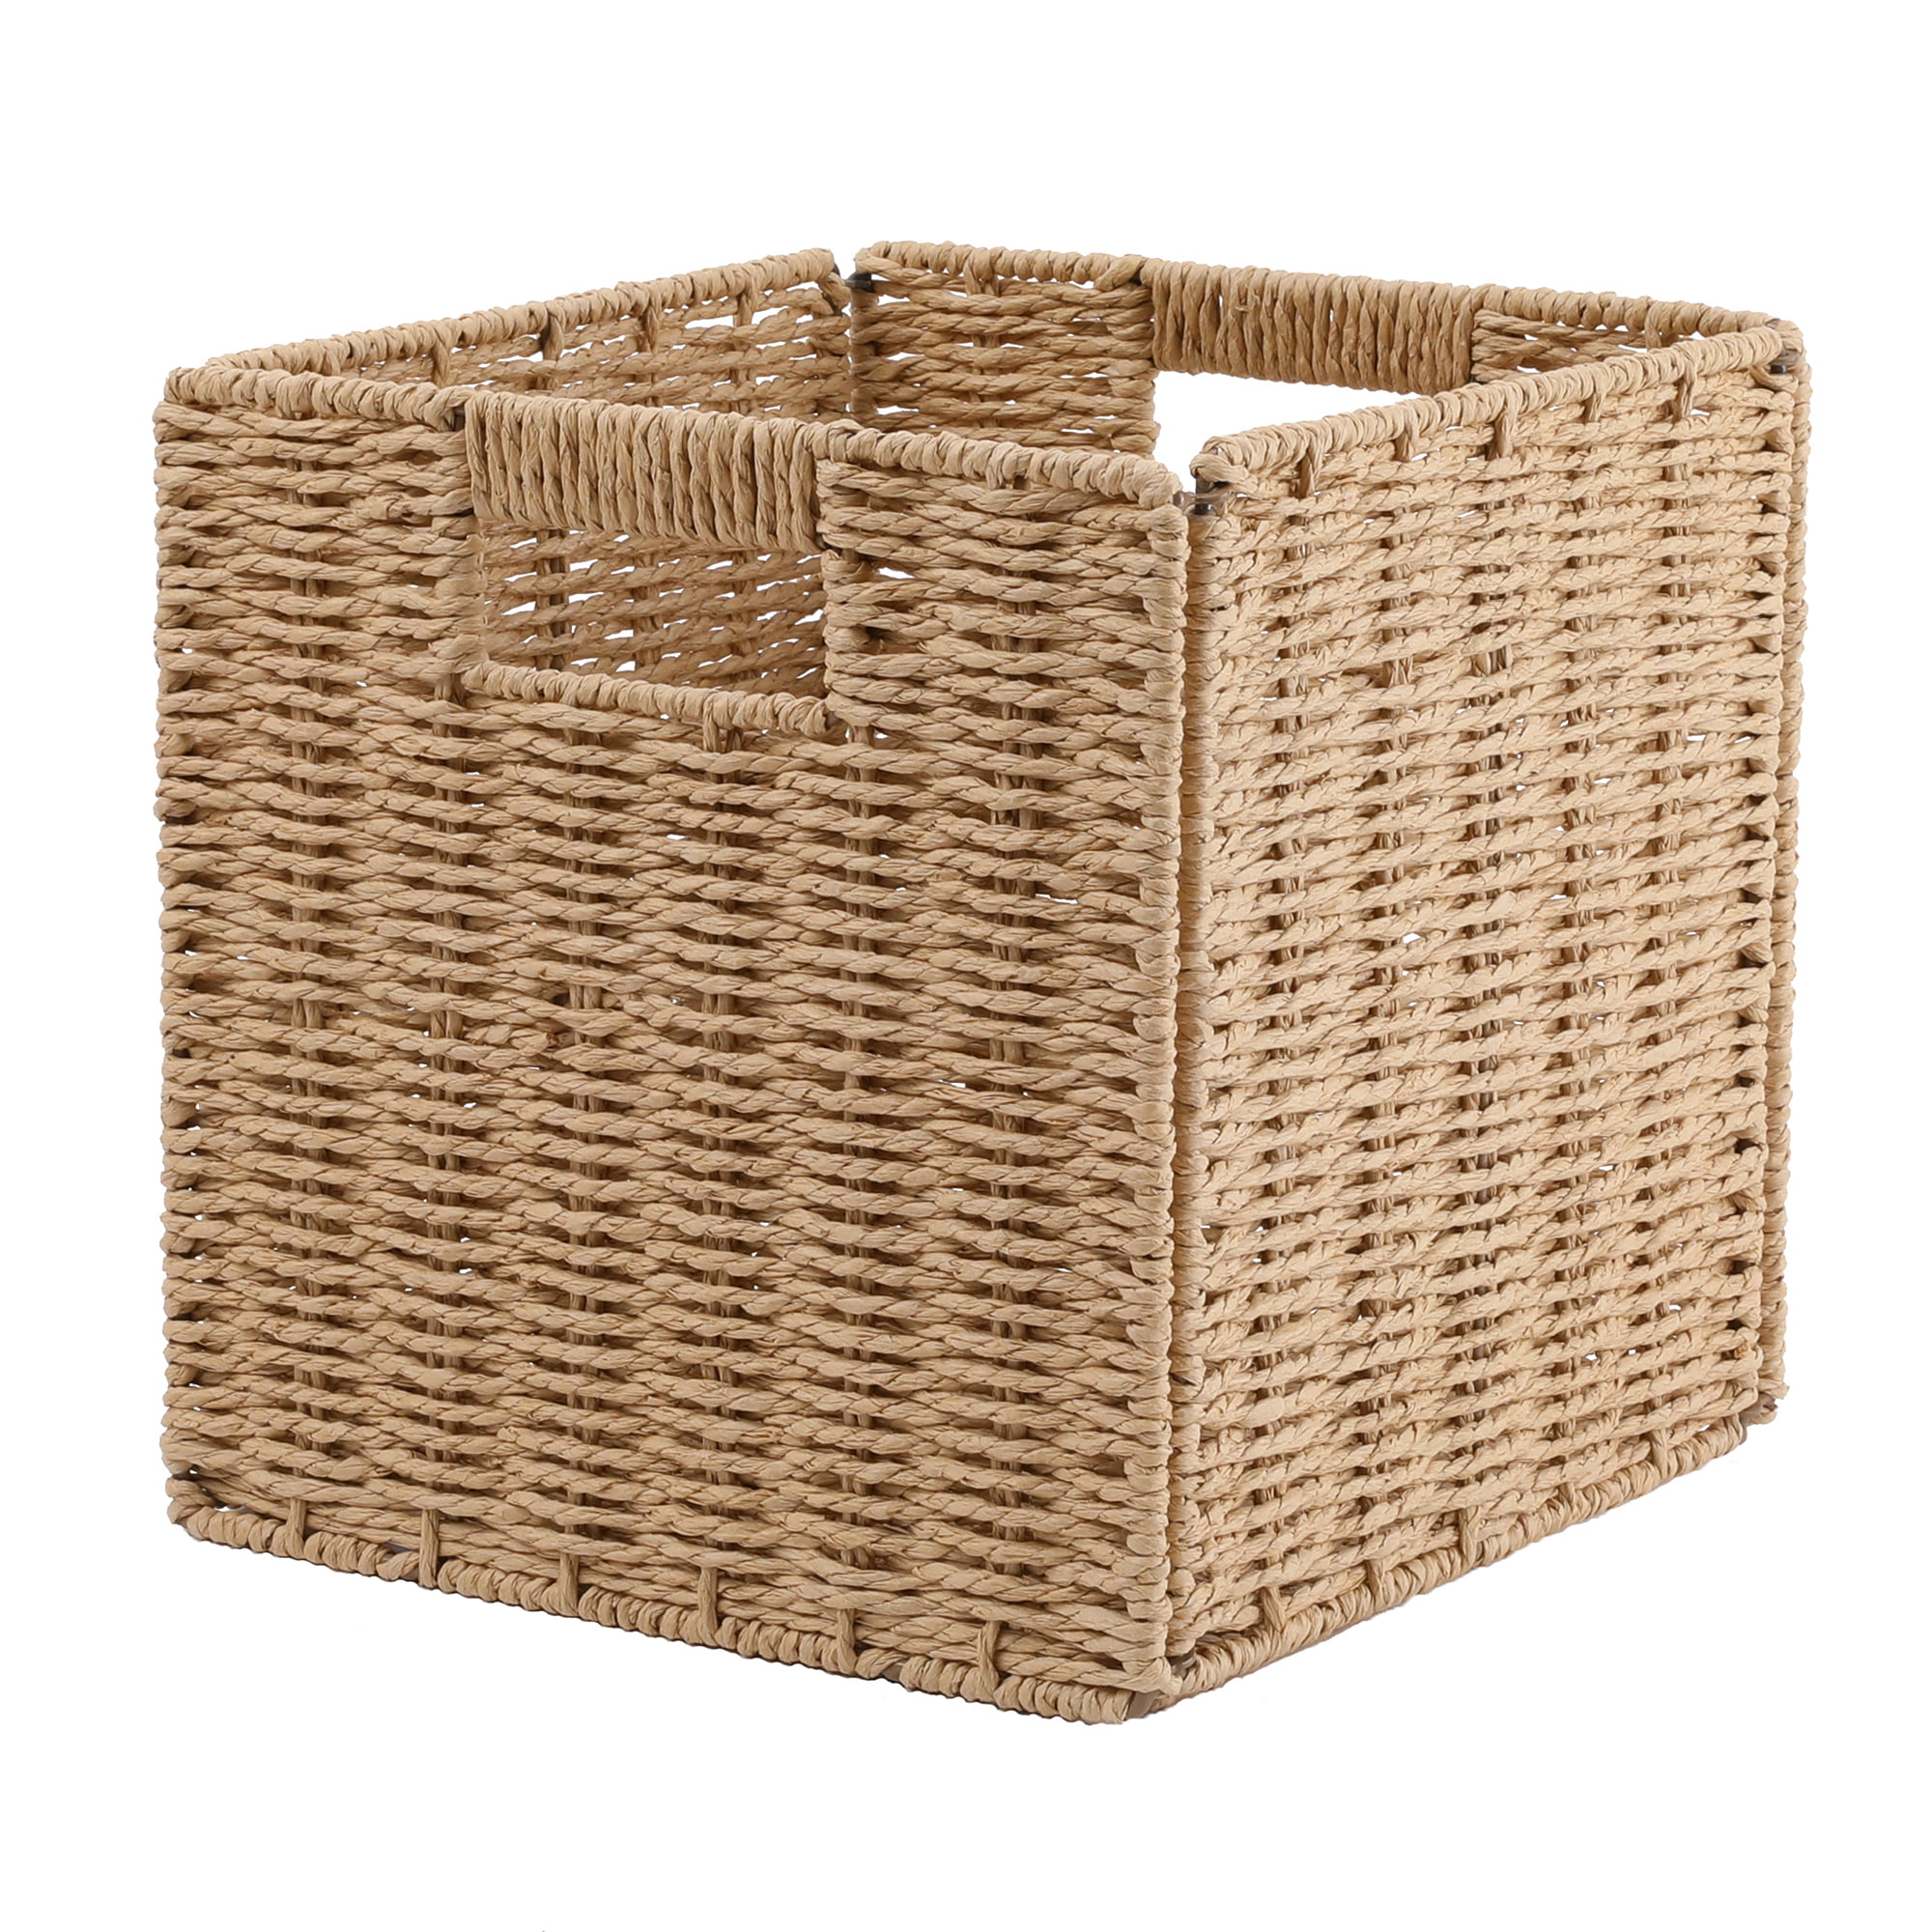 Wicker Nesting NEW Storage Bins Baskets Lined Muslim 3 Piece NWT Lg 18" Med Sm 